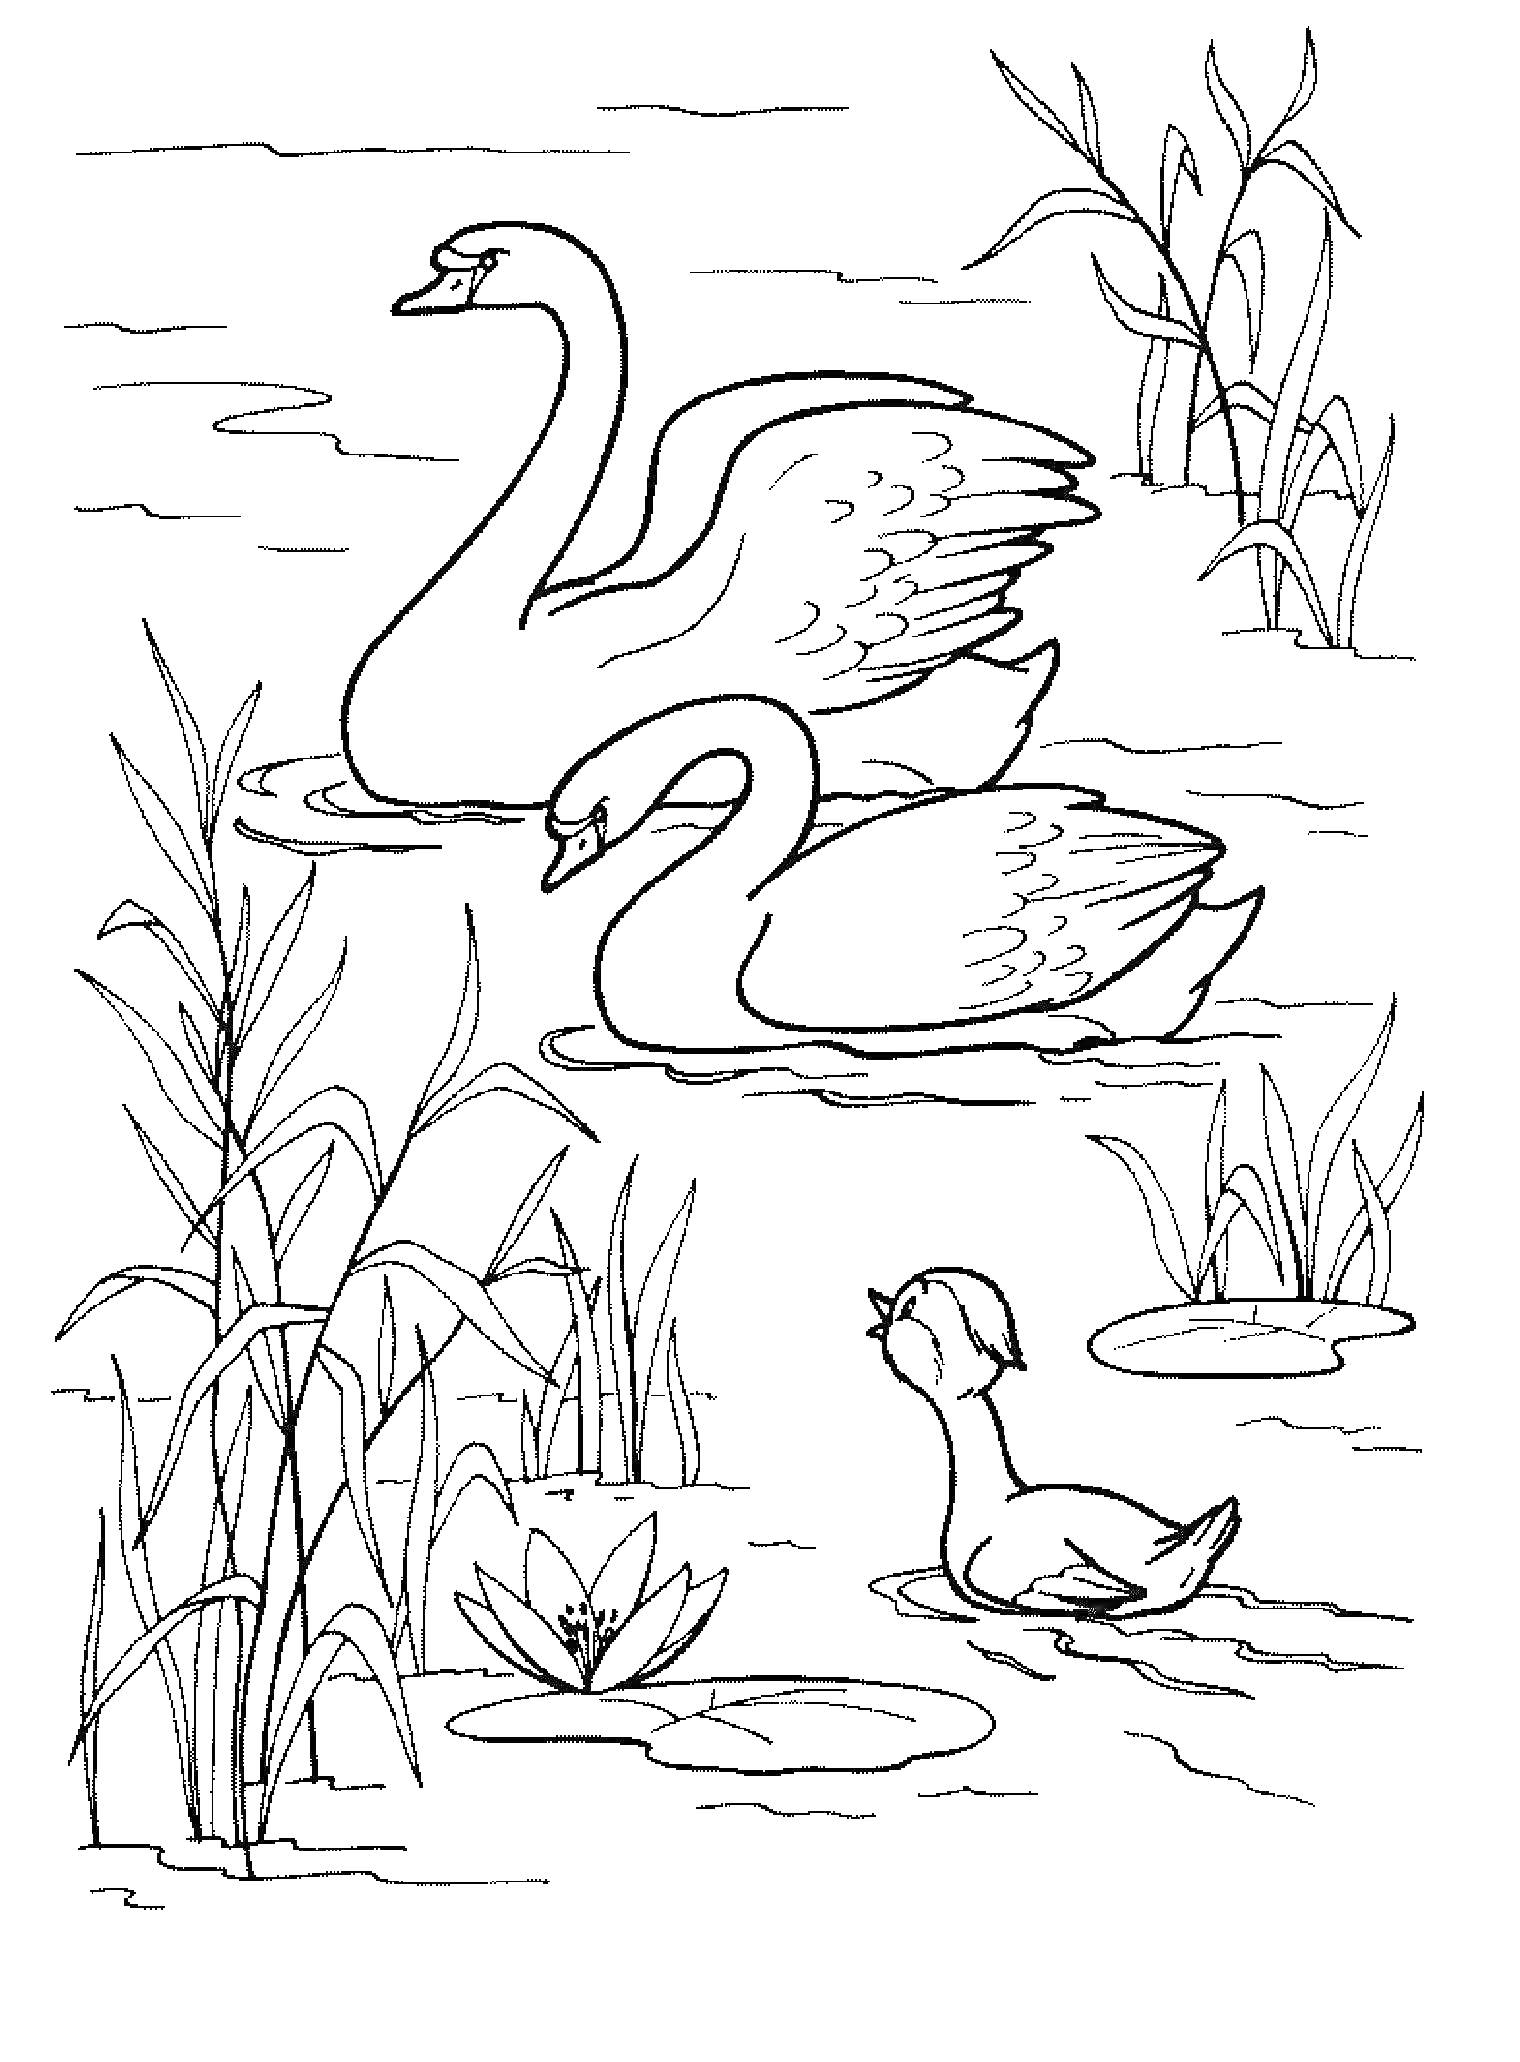 Раскраска Два лебедя и один утёнок на пруду среди зарослей камыша и водных лилий